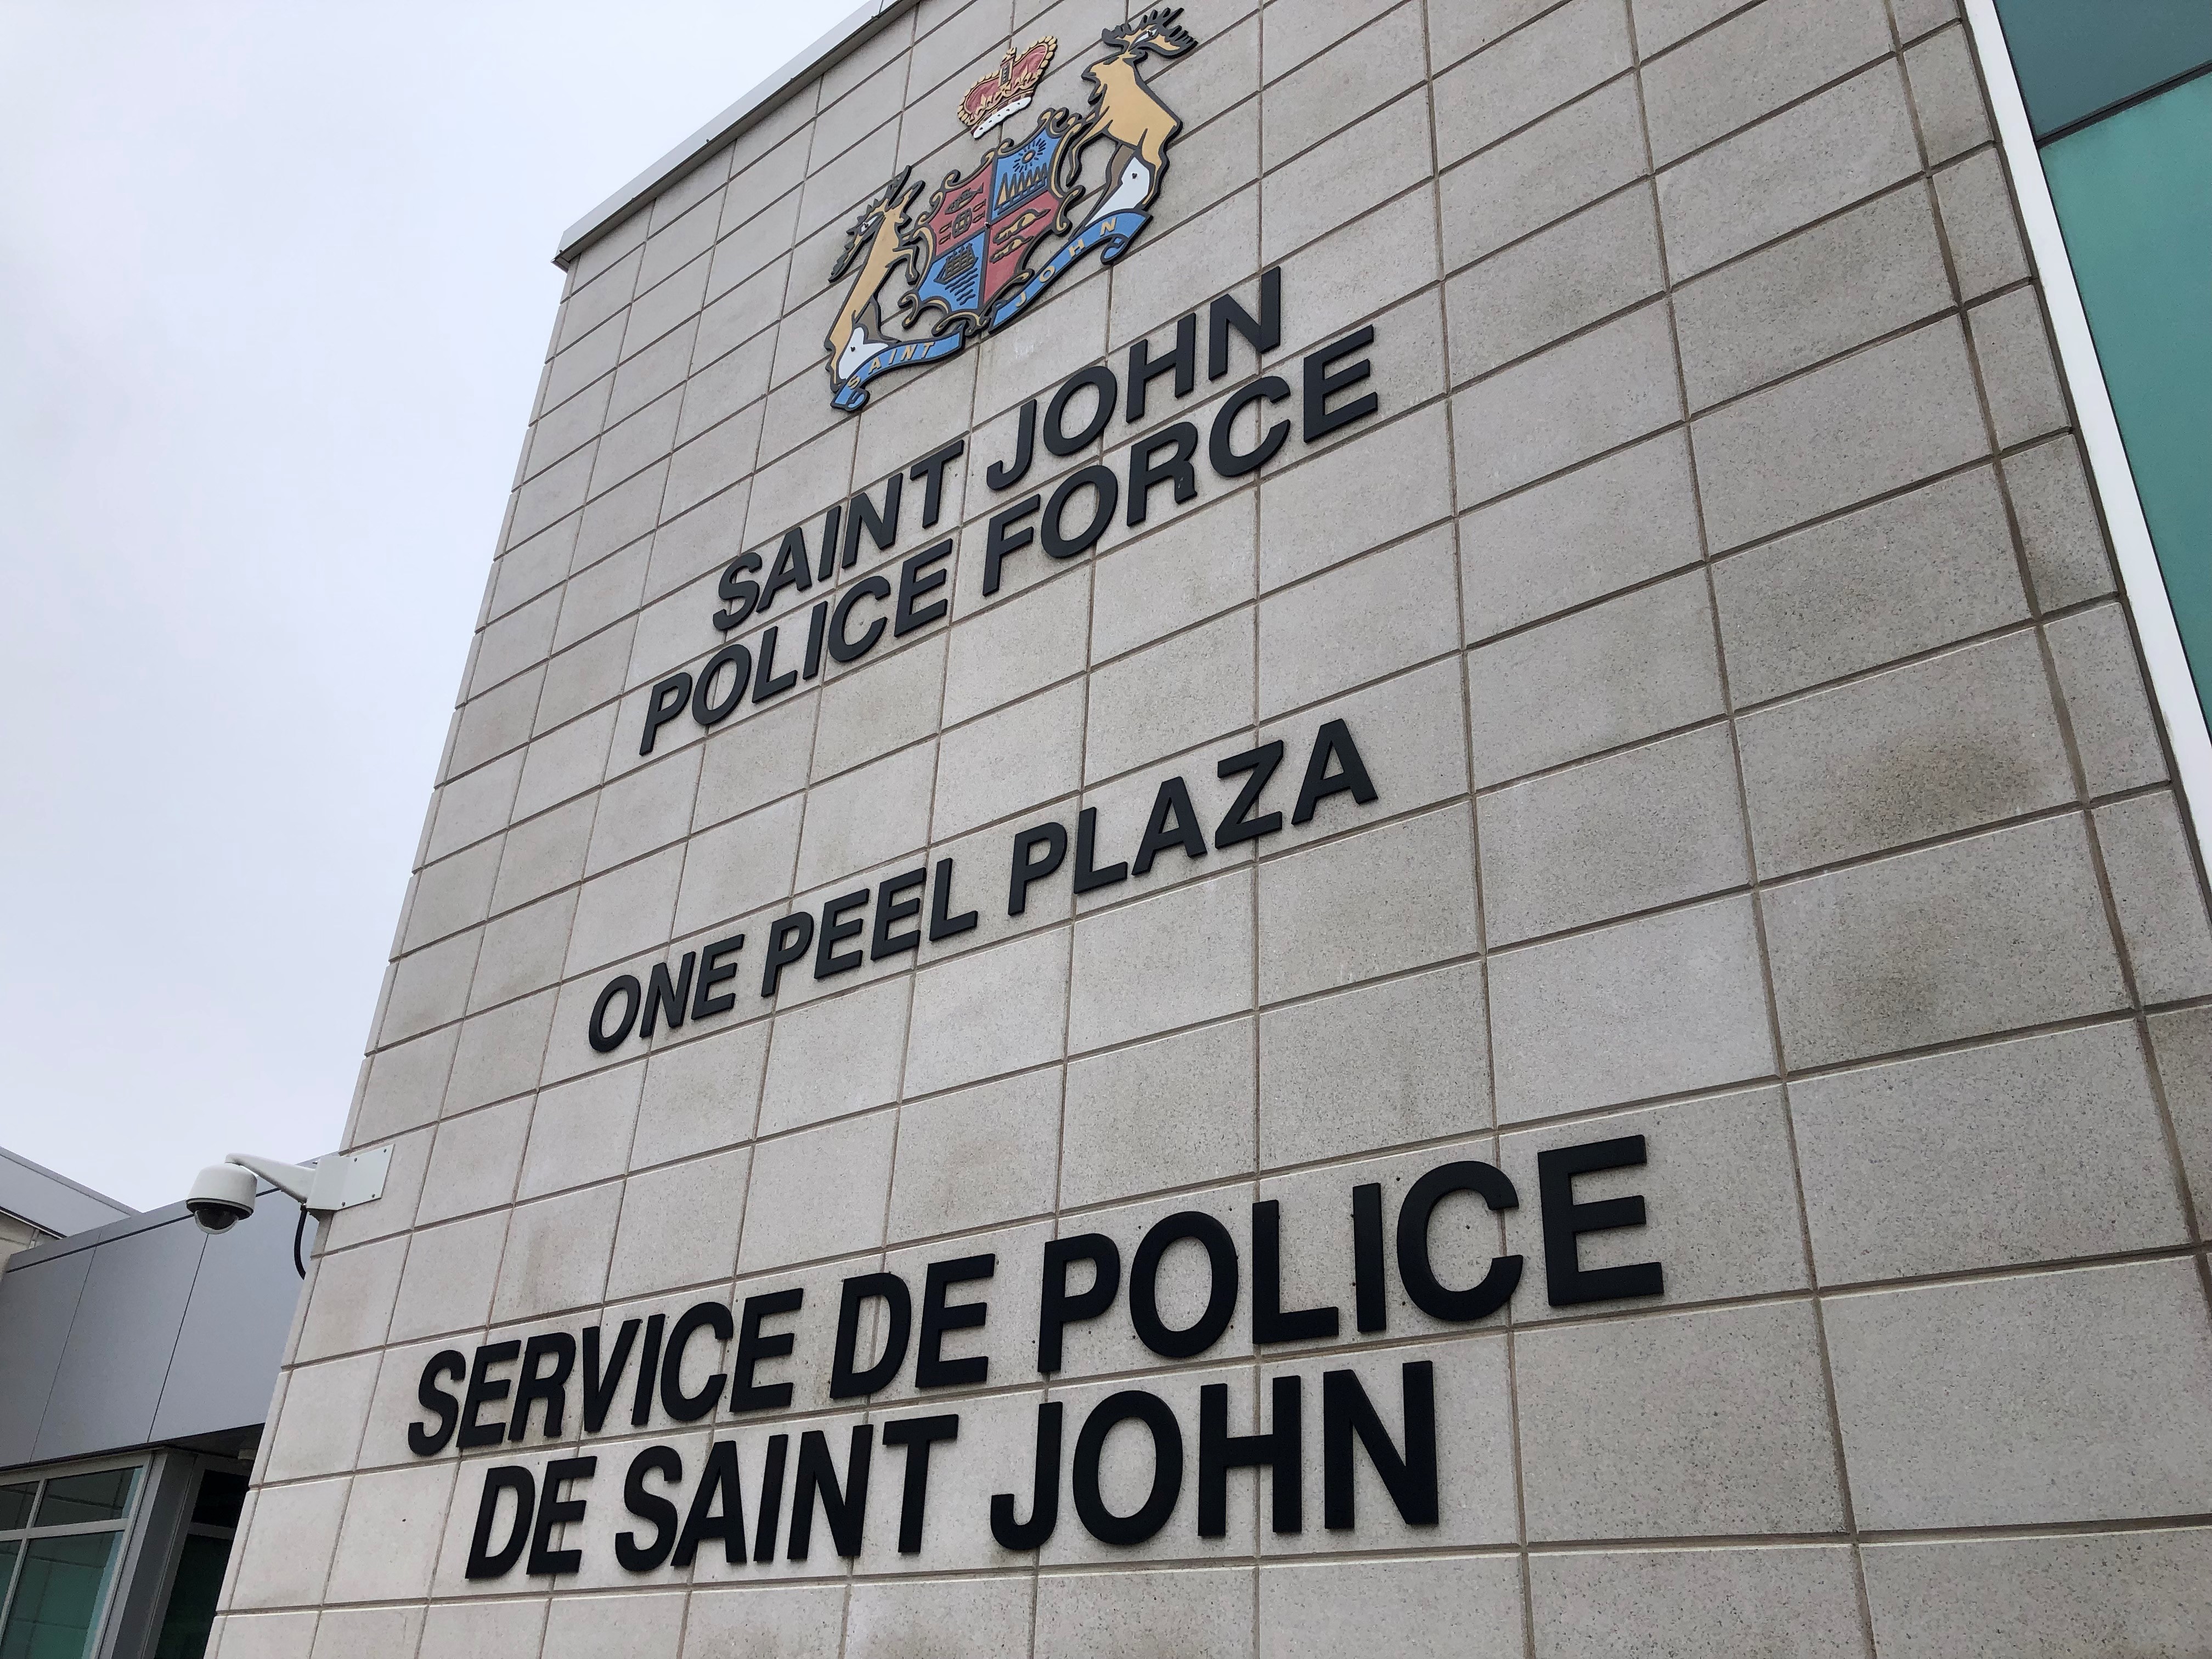 Police identify 2 people killed in Saint John encampment fire